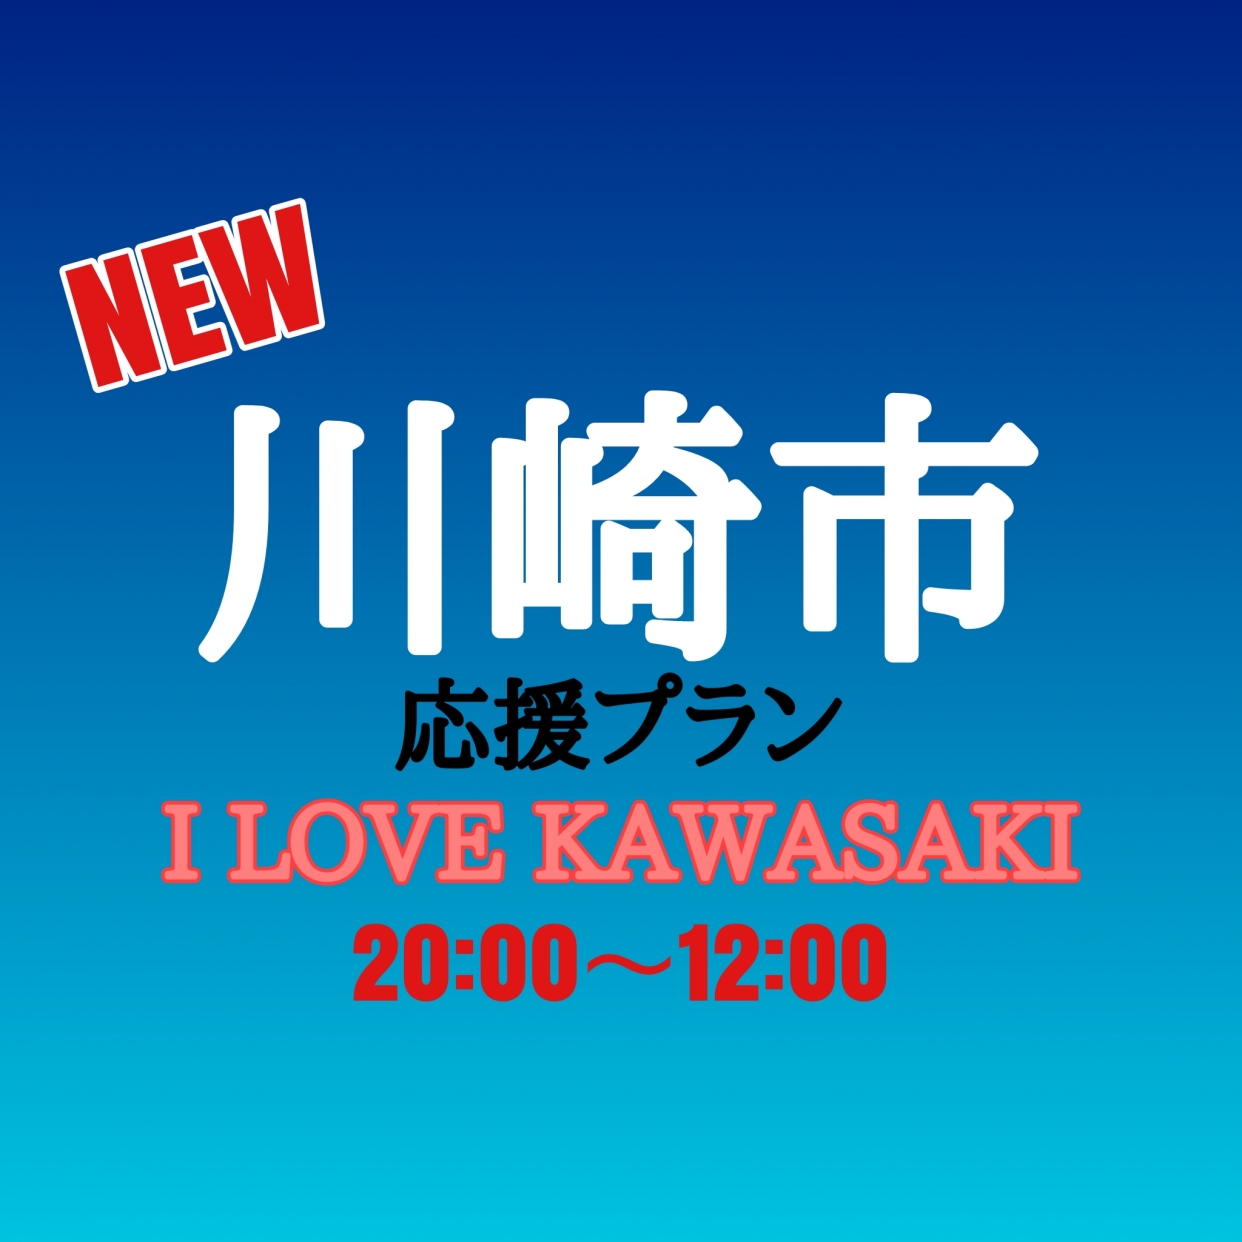 NEW【I LOVE KAWASAKI】川崎市応援プラン 20:00～12:00